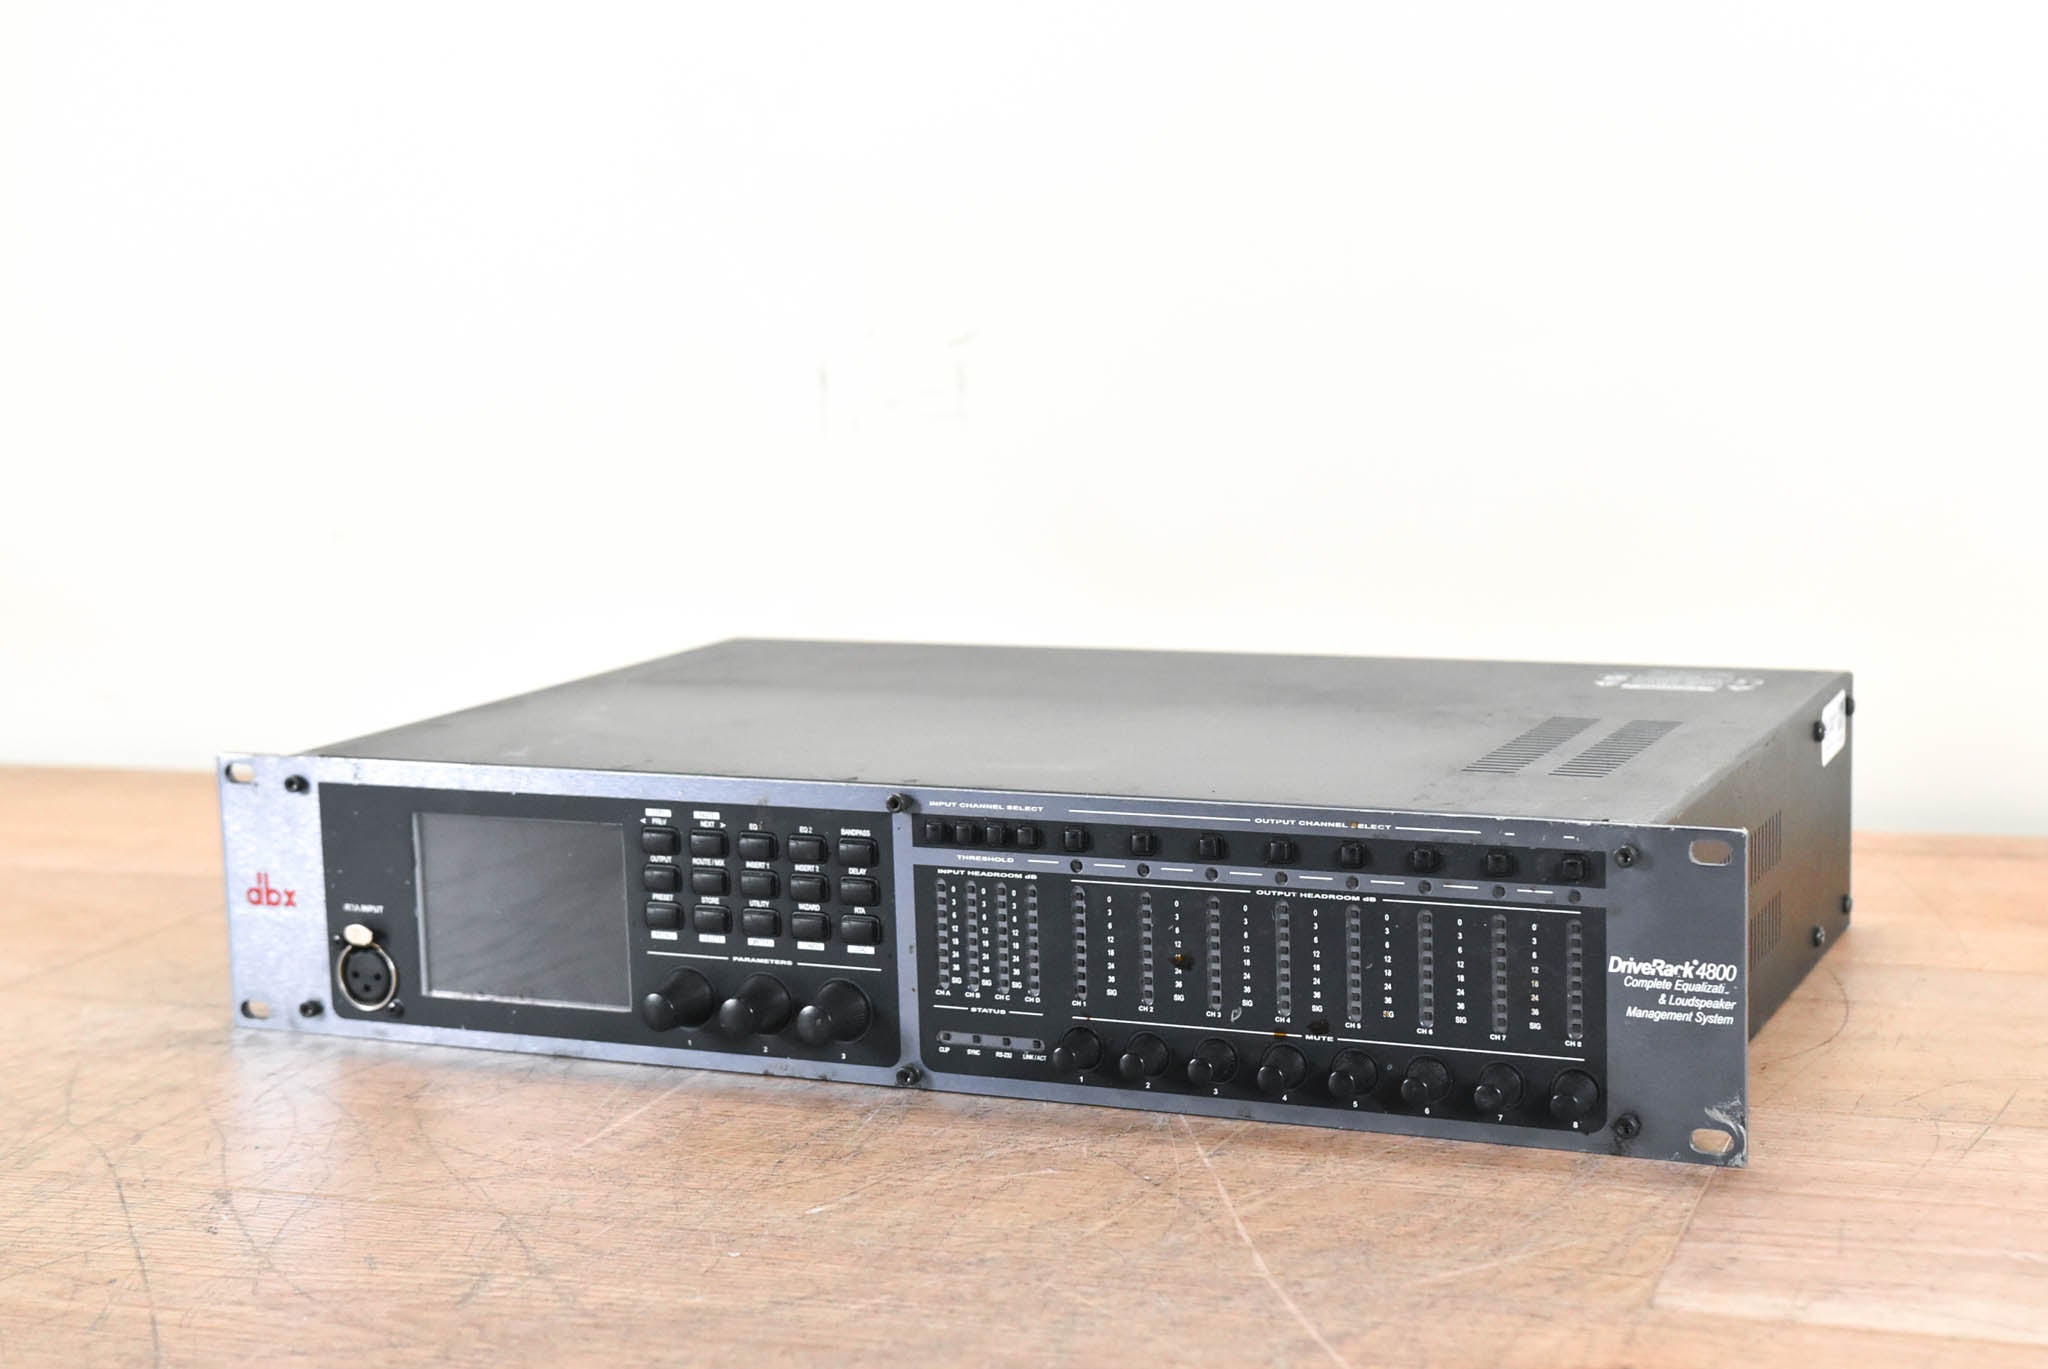 dbx DriveRack 4800 Complete Loudspeaker Management System